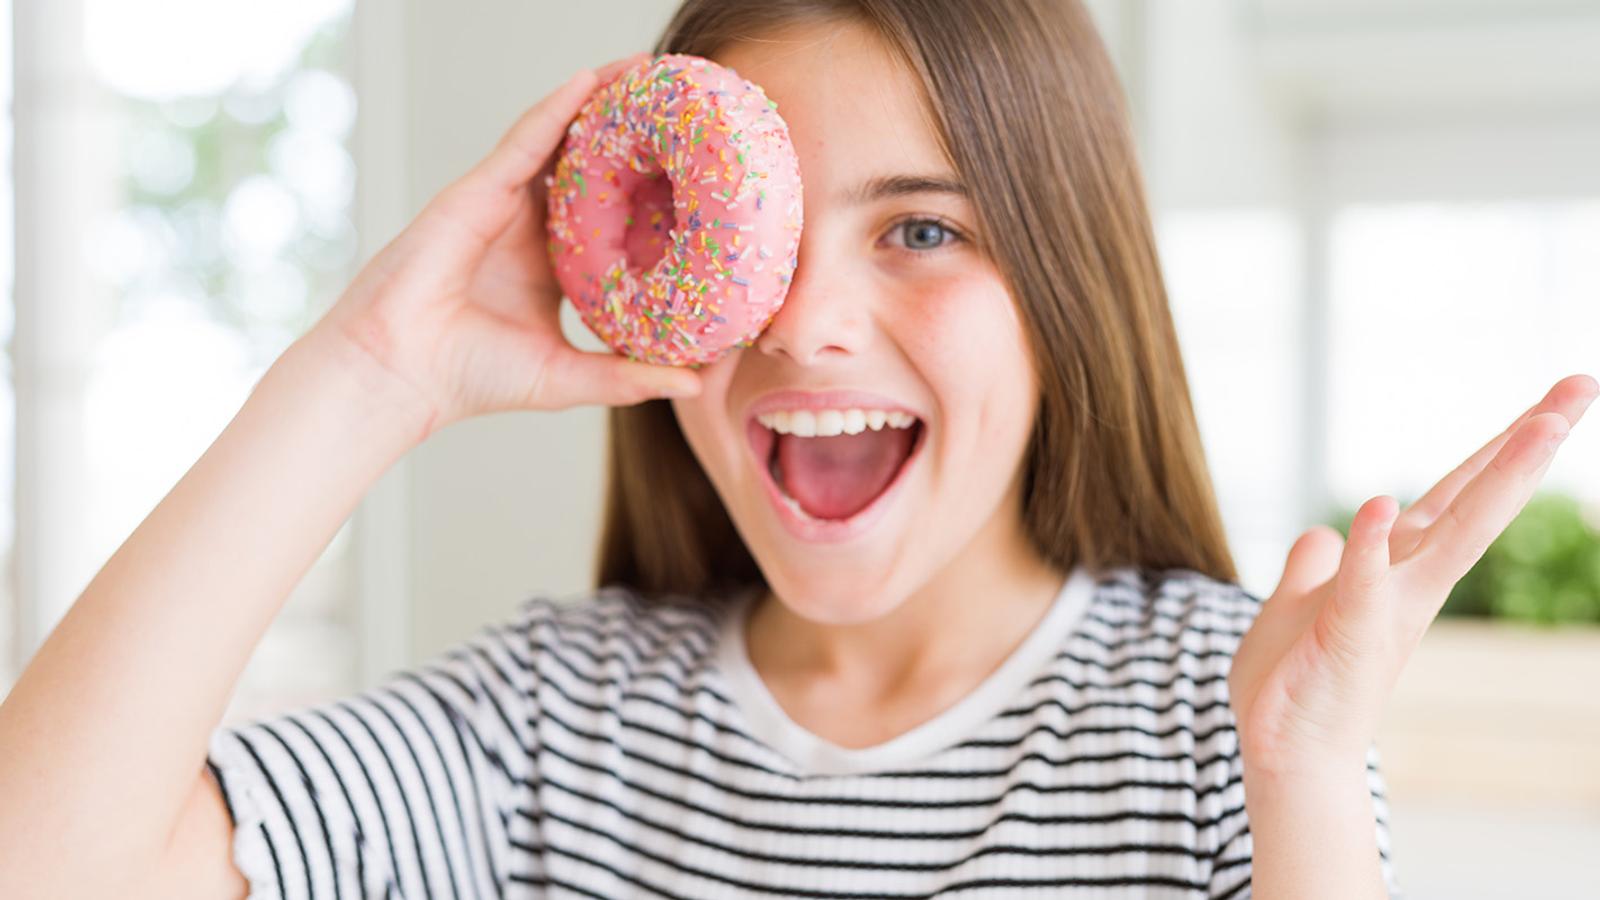 Zucker macht Kinder nicht hyperaktiv